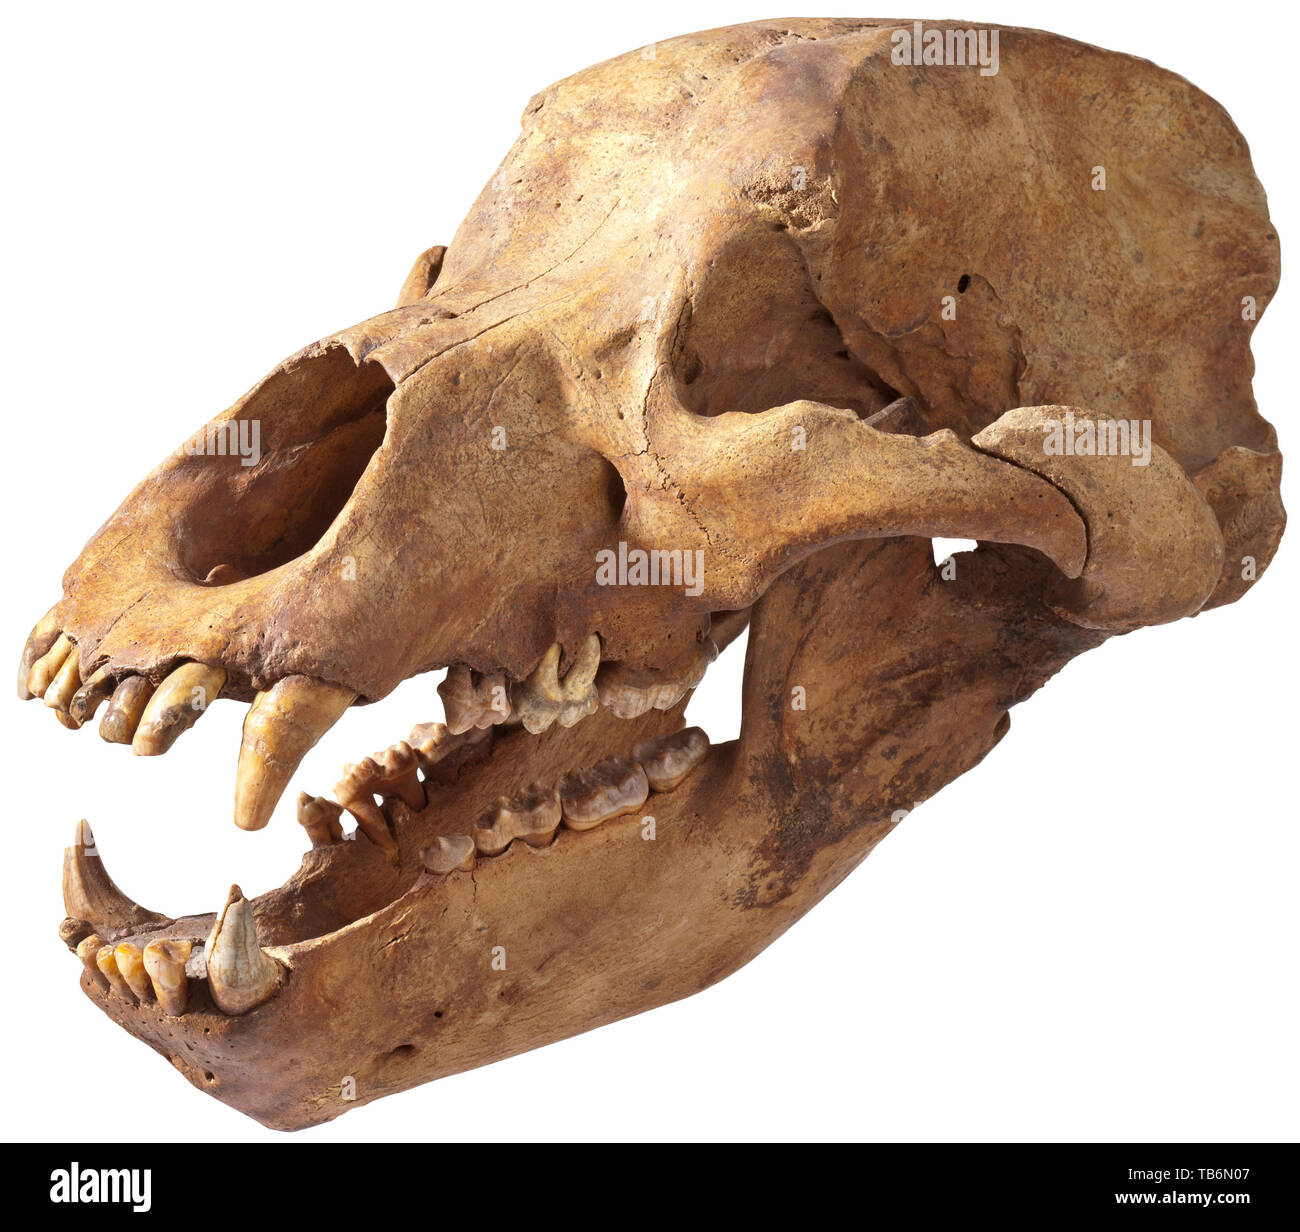 Le crâne d'un ours - l'âge de glace de Sibérie, vers 30 000 avant J.C, un parfait presque entièrement conservée et crâne de l'ours Ursus spelaeus, espèce répandue en Sibérie dans l'ère Pléistocène. Les mâchoires grandes ouvertes, presque toutes les dents encore en place. Dans un excellent état de conservation. Hauteur 24 cm, longueur 52 cm, largeur 30 cm. On trouve rarement dans cet état. Artisanat, Artisanat, Artisanat, objet, objets, alambics, clipping, coupures, cut out, cut-out, cut-outs, historique, préhistorique, historique Additional-Rights Clearance-Info-Not-Available- Banque D'Images